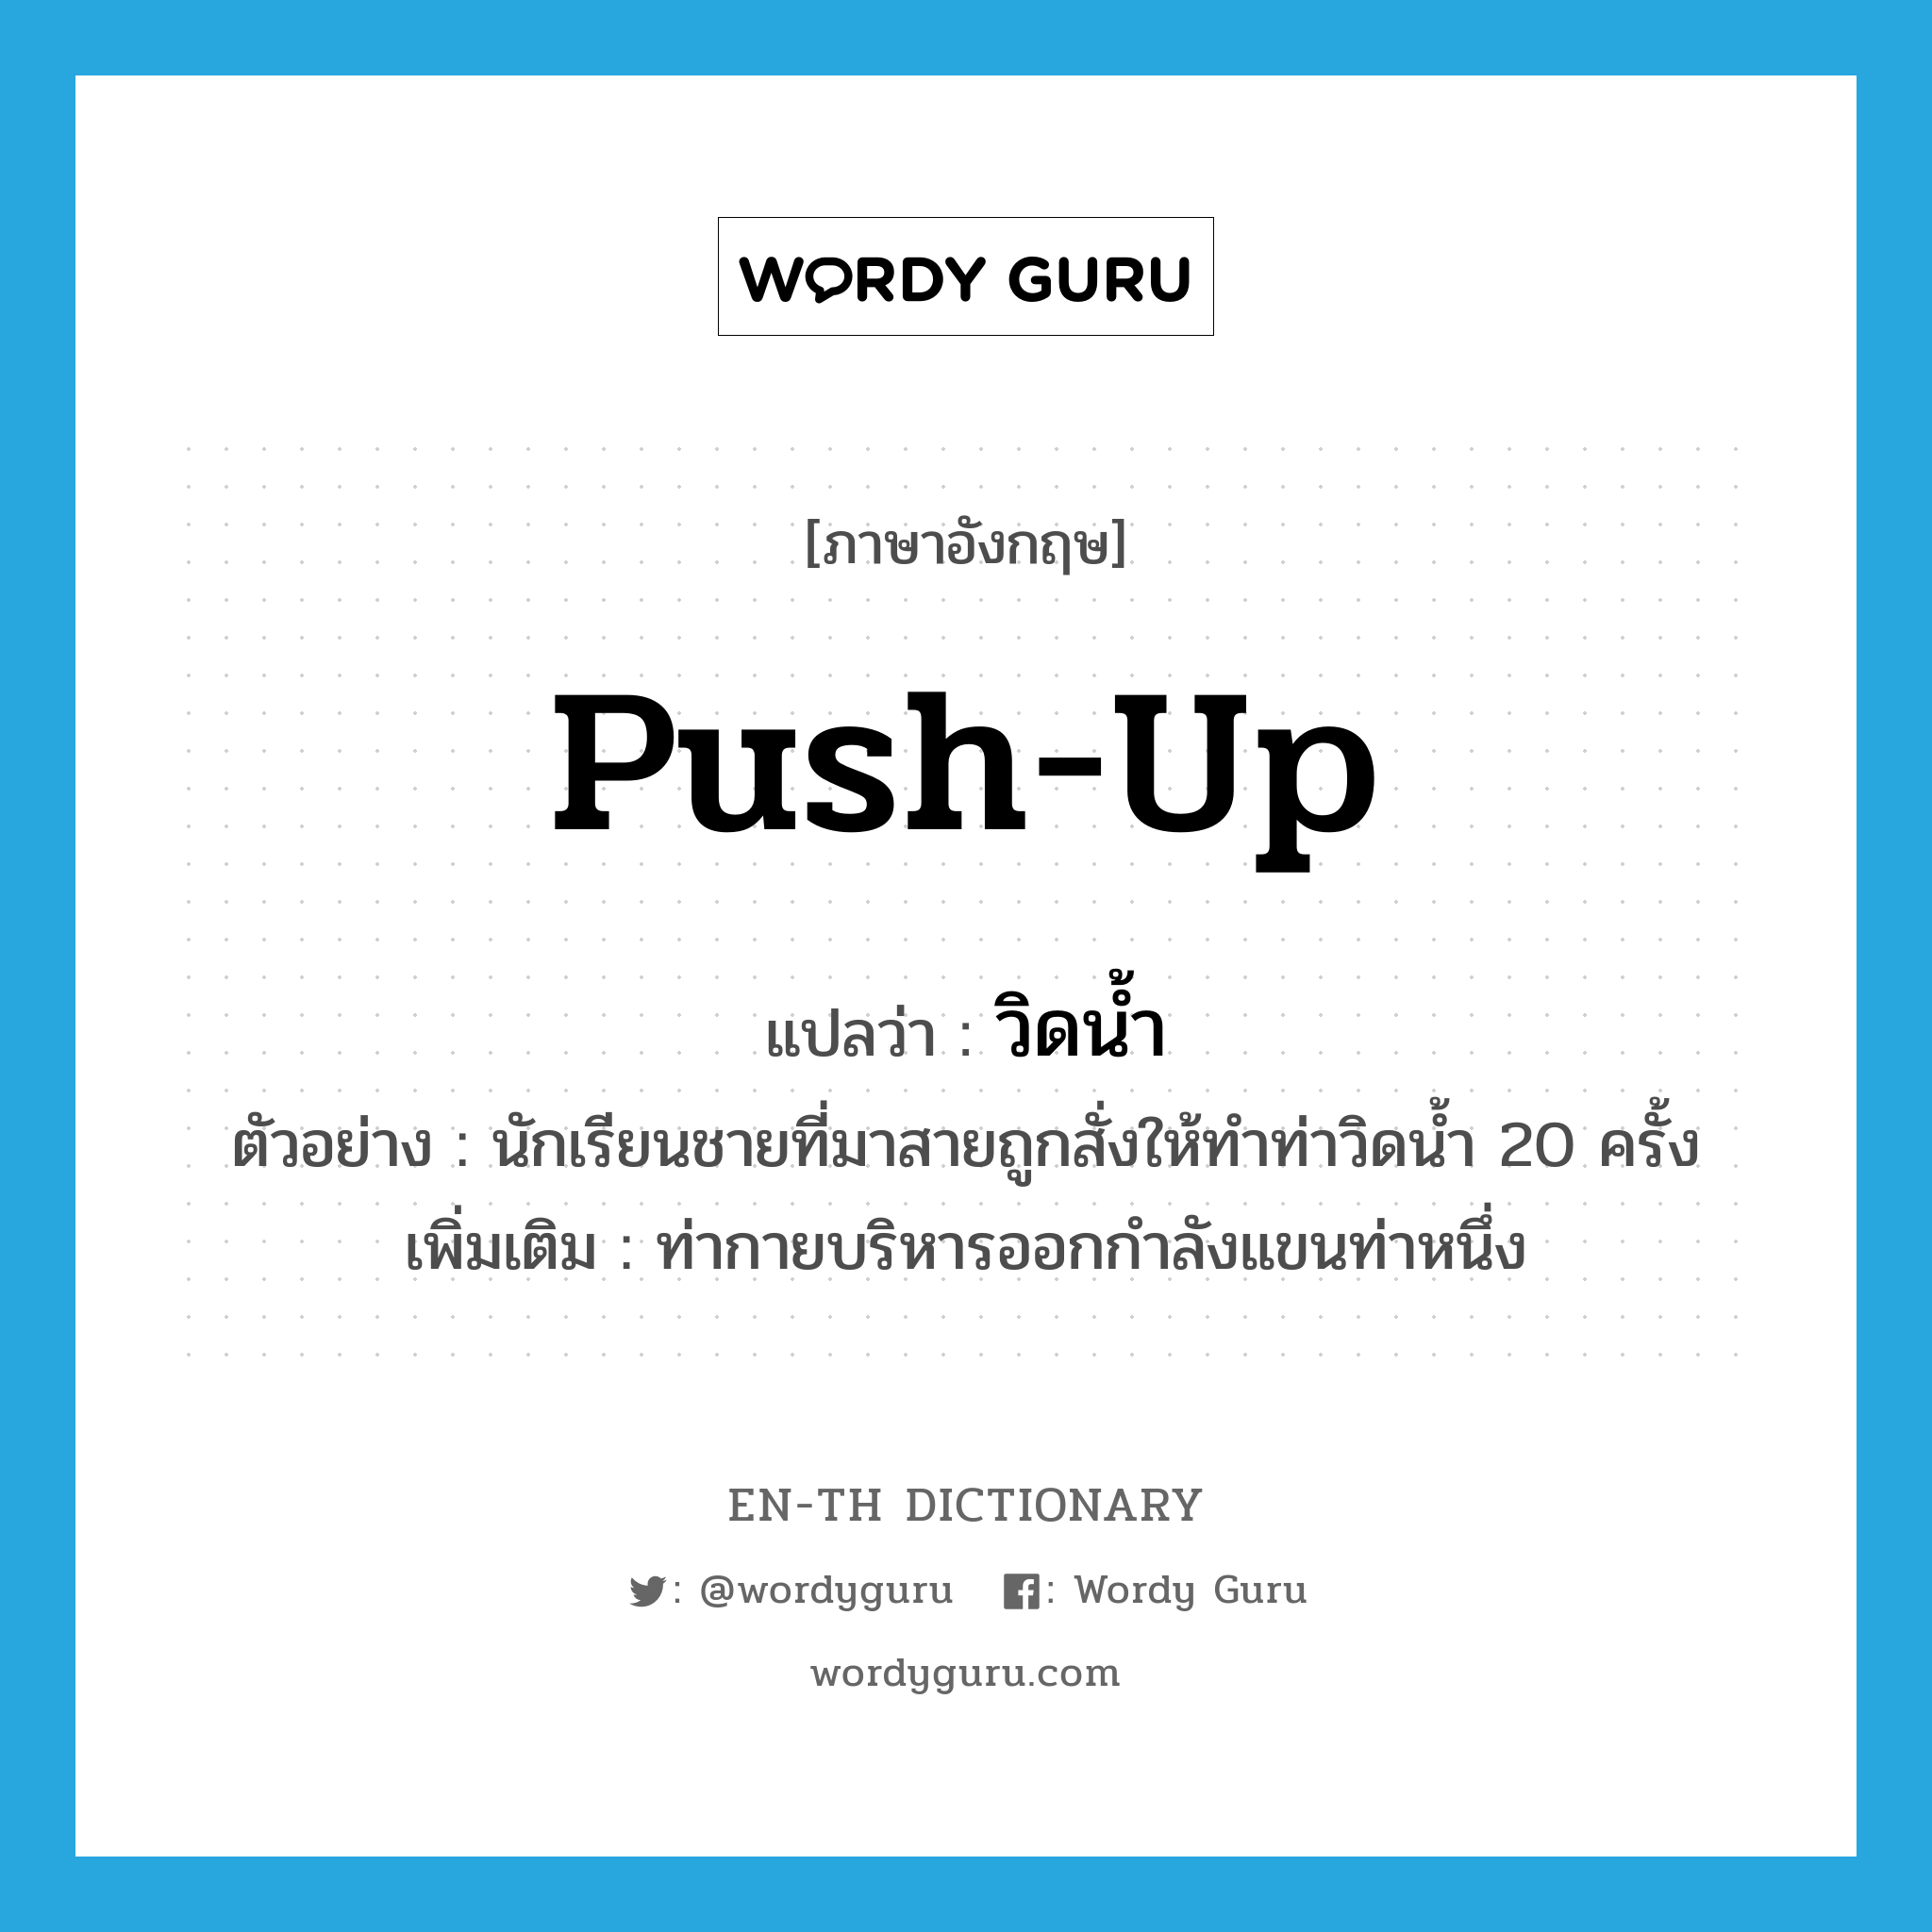 push-up แปลว่า?, คำศัพท์ภาษาอังกฤษ push-up แปลว่า วิดน้ำ ประเภท N ตัวอย่าง นักเรียนชายที่มาสายถูกสั่งให้ทำท่าวิดน้ำ 20 ครั้ง เพิ่มเติม ท่ากายบริหารออกกำลังแขนท่าหนึ่ง หมวด N